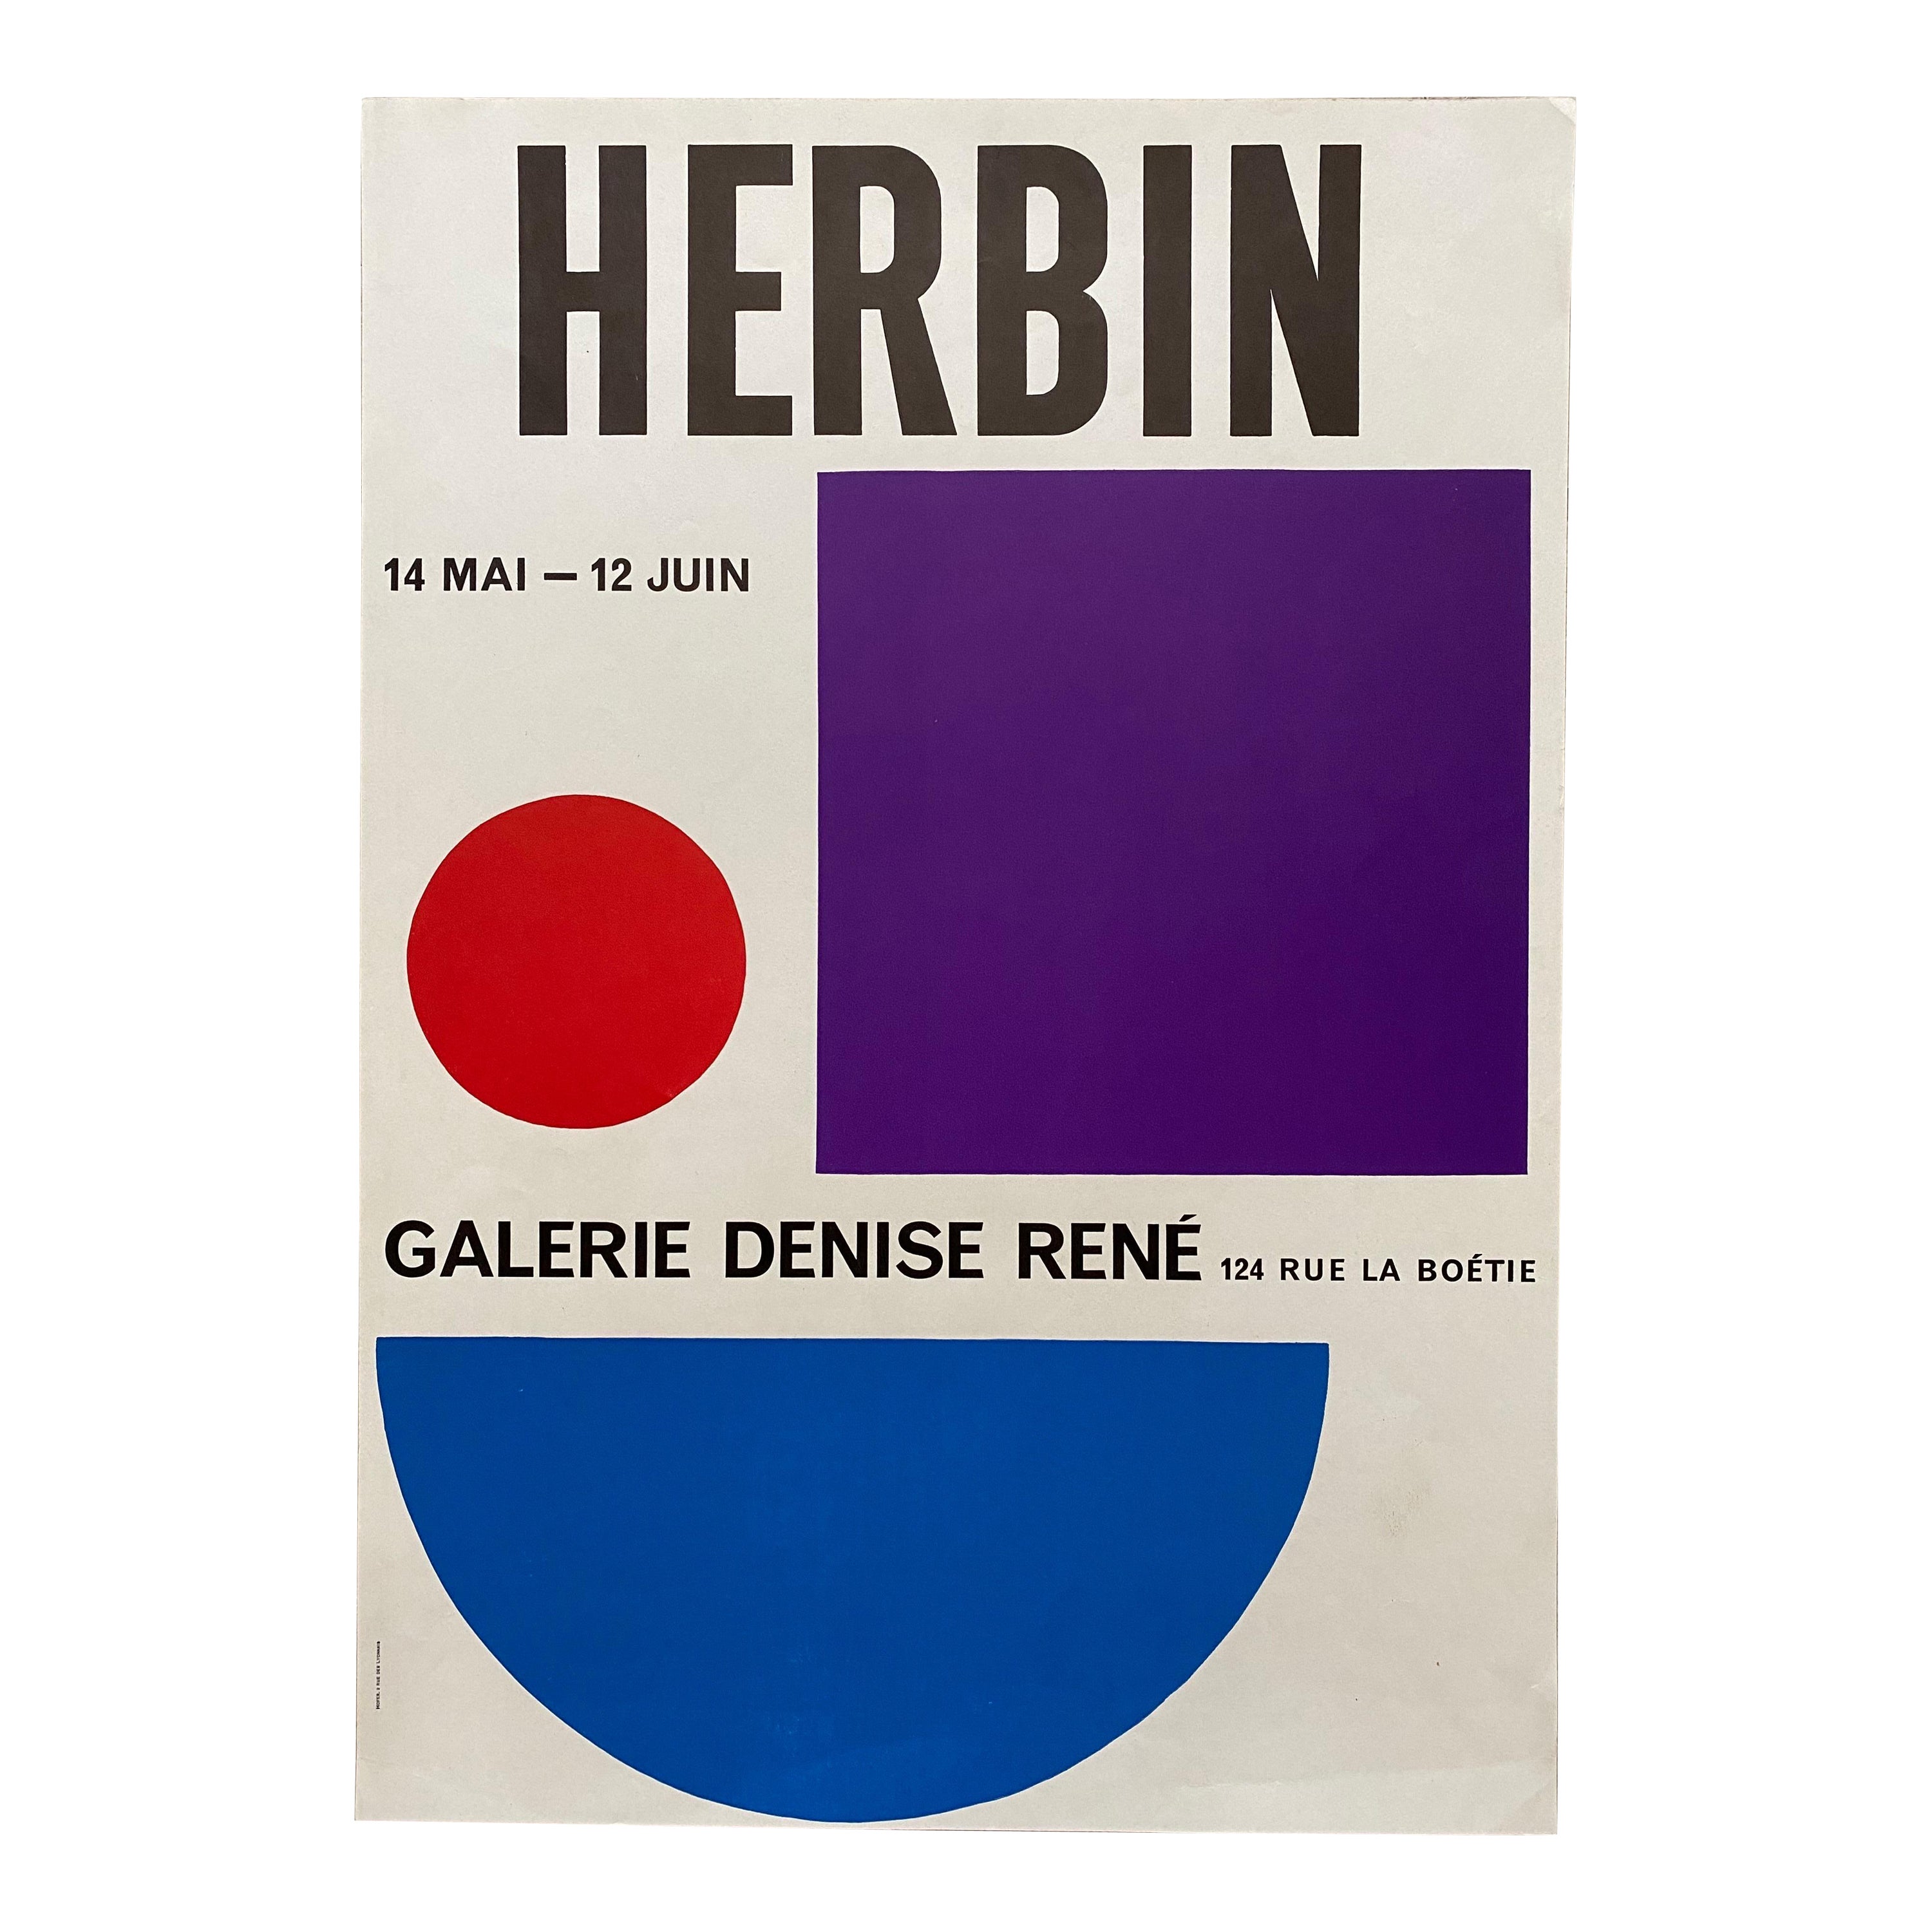 Impression d'exposition Auguste Herbin pour la Galerie Denise Rene, Paris, 1954 